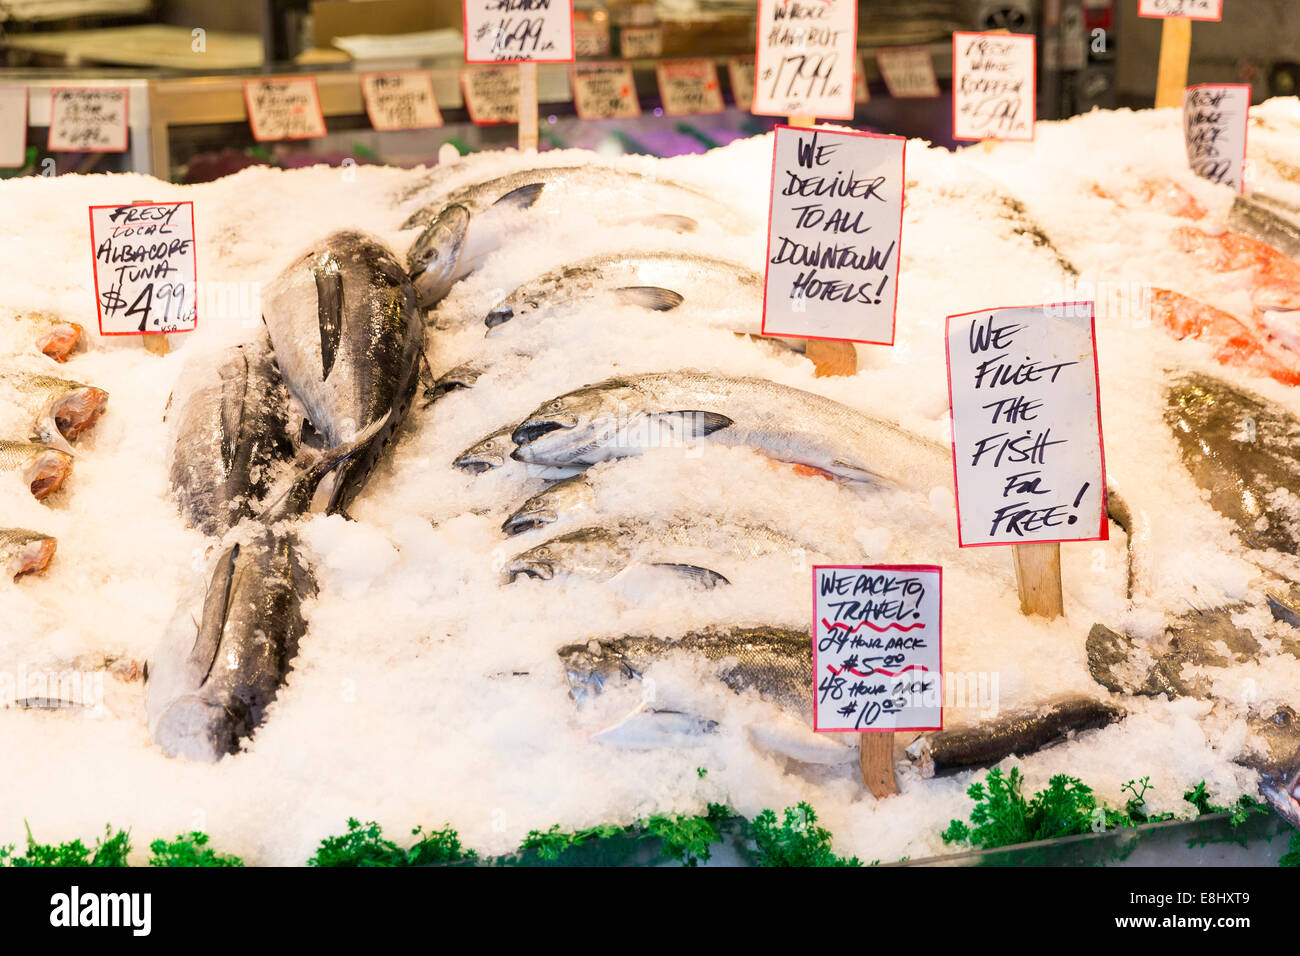 Wild gefangenen Fisch auf dem Display auf die Welt berühmte Pike Place Fish Market stehen Public Market Center, Seattle, Washington, USA Stockfoto